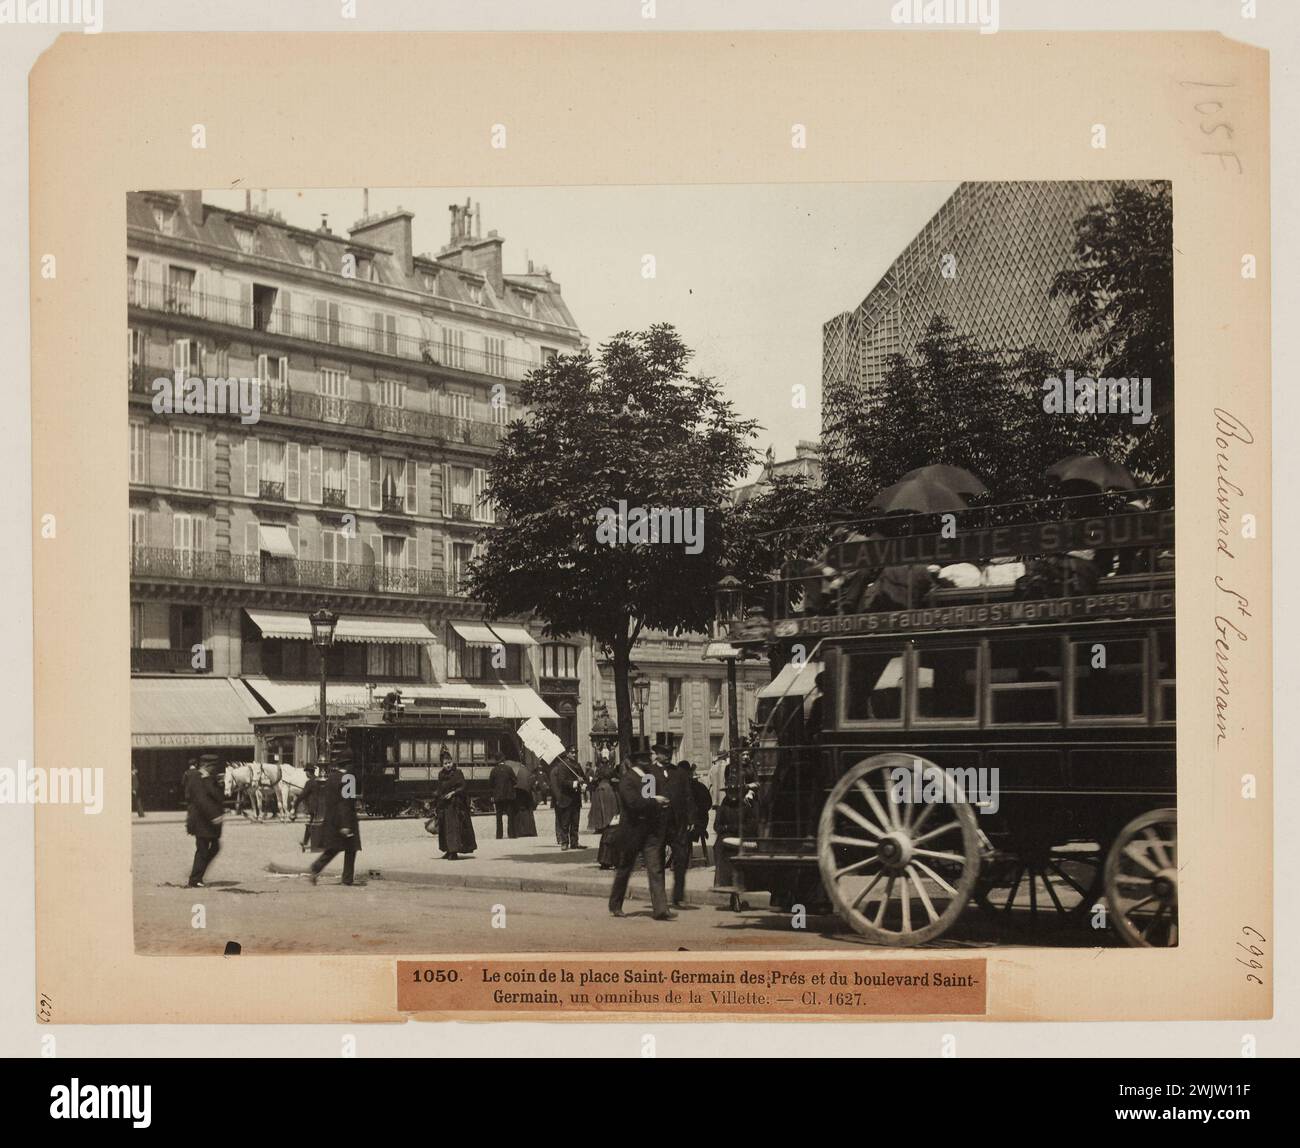 Blancard, Hippolyte (1843-D.1924), Omnibus de la Villette, corner of Saint-Germain-des-Près, 6th arrondissement, Paris (dummy title), 1890. Platinum draw. Carnavalet museum, history of Paris. Stock Photo